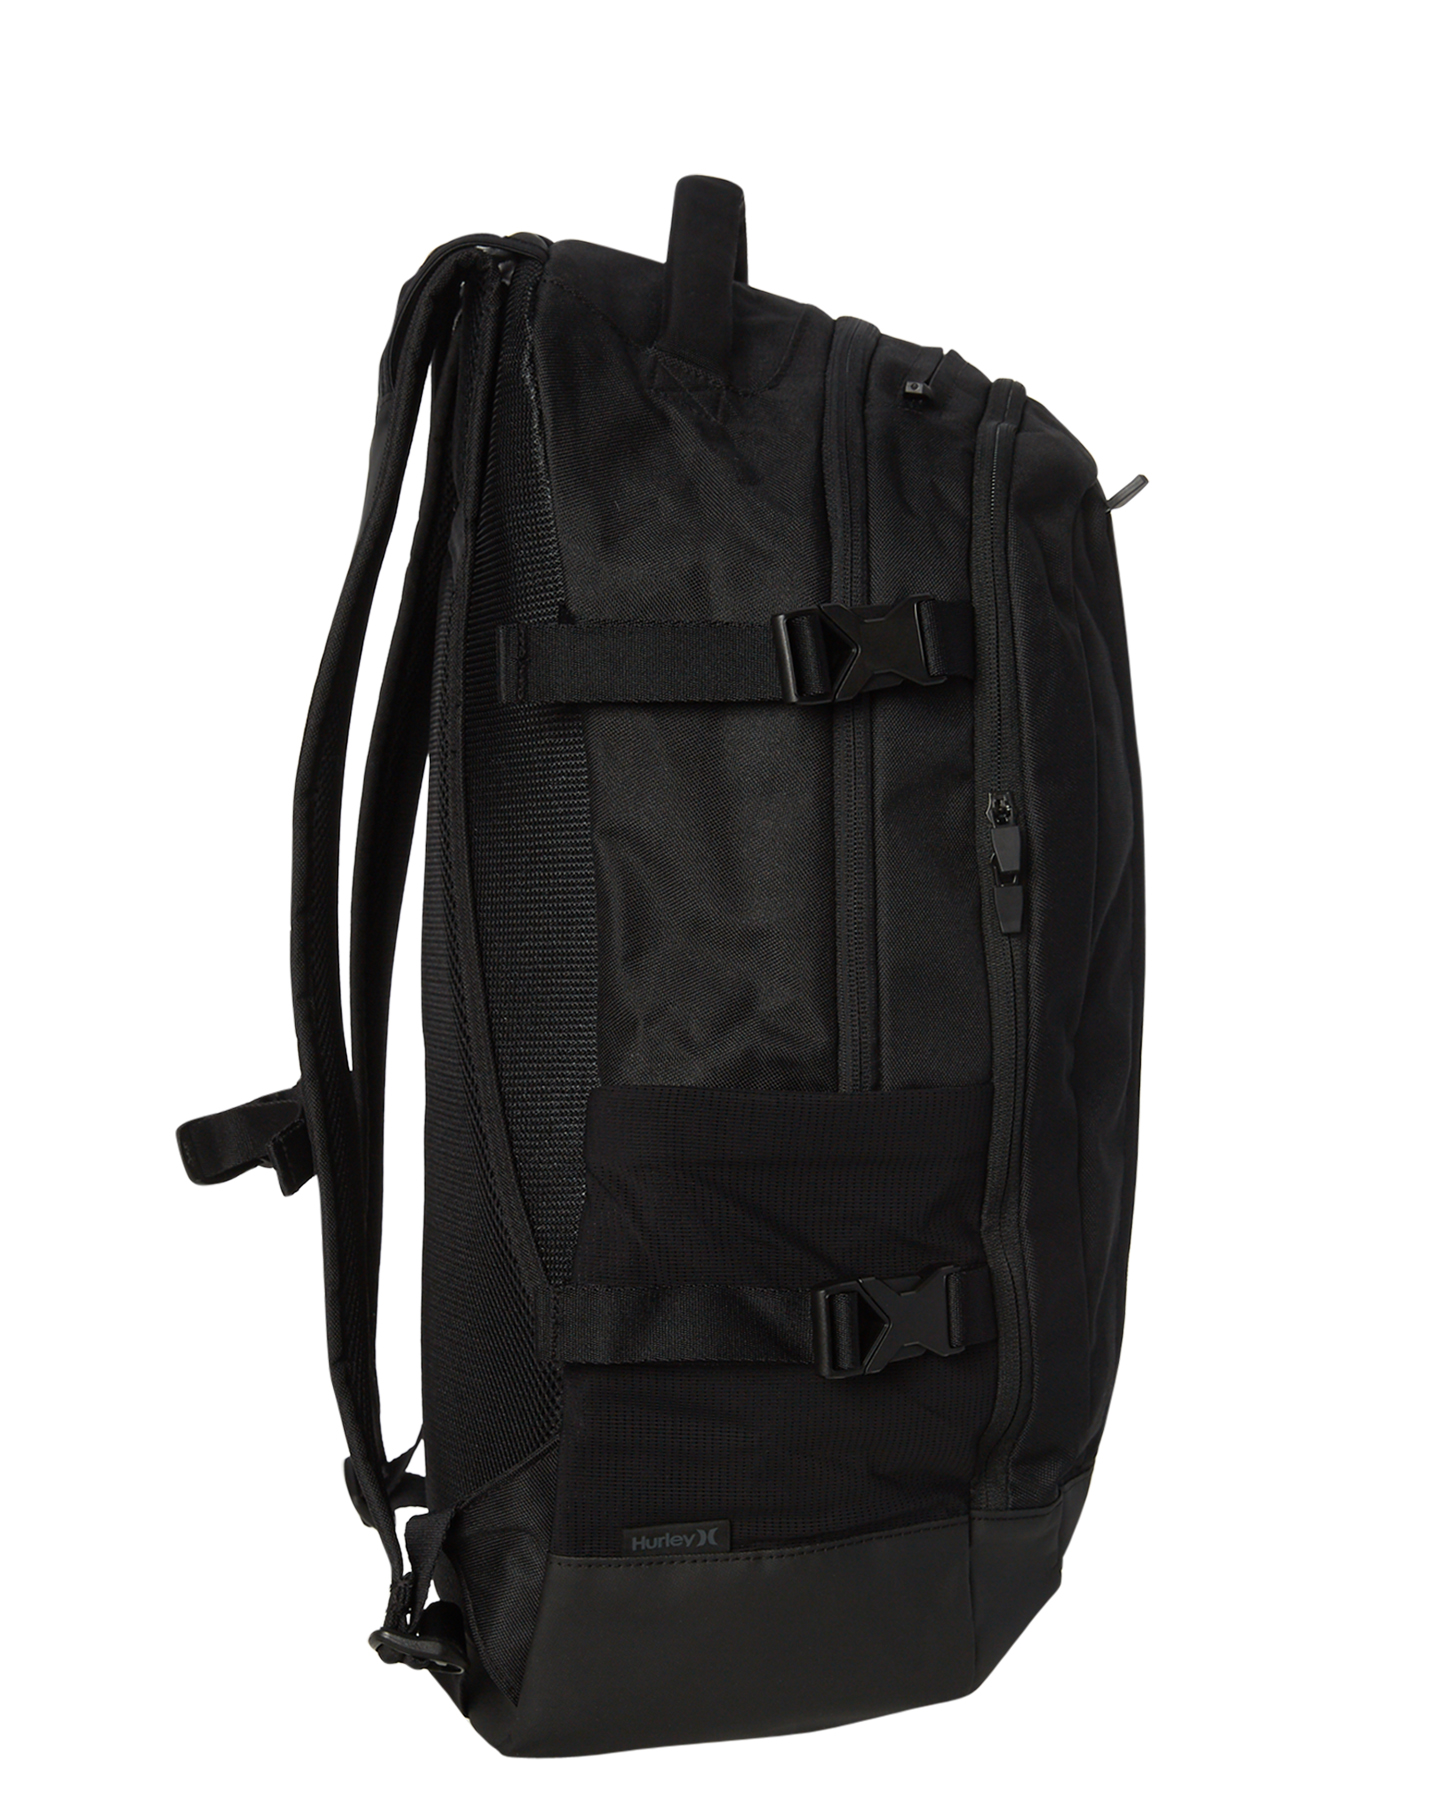 Hurley Wayfarer Ii Backpack - Black | SurfStitch